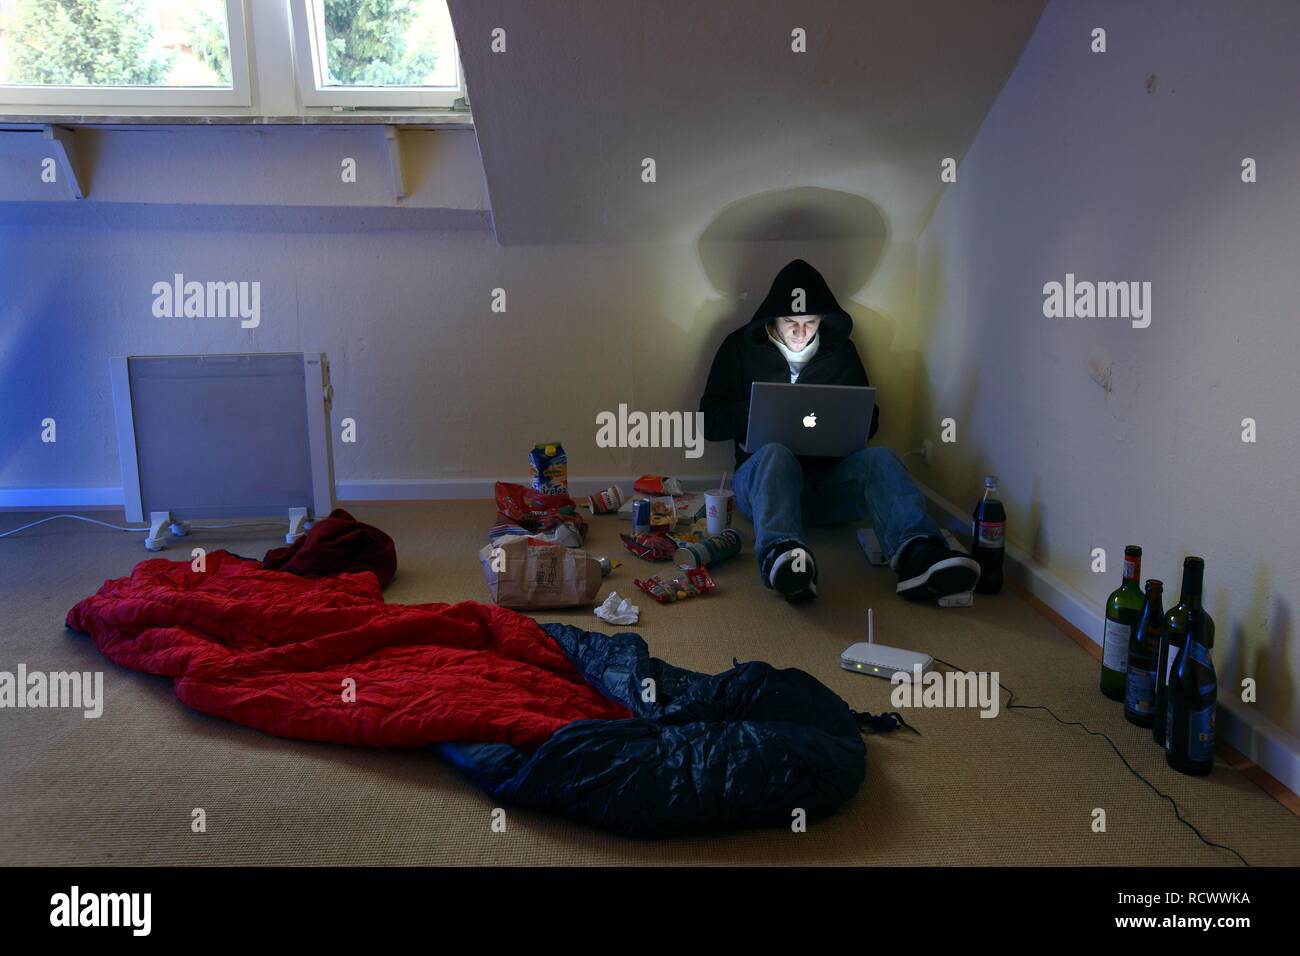 Hacker travaillant sur un ordinateur portable dans une région peu appartement meublé, image symbolique pour le piratage informatique, la criminalité informatique Banque D'Images